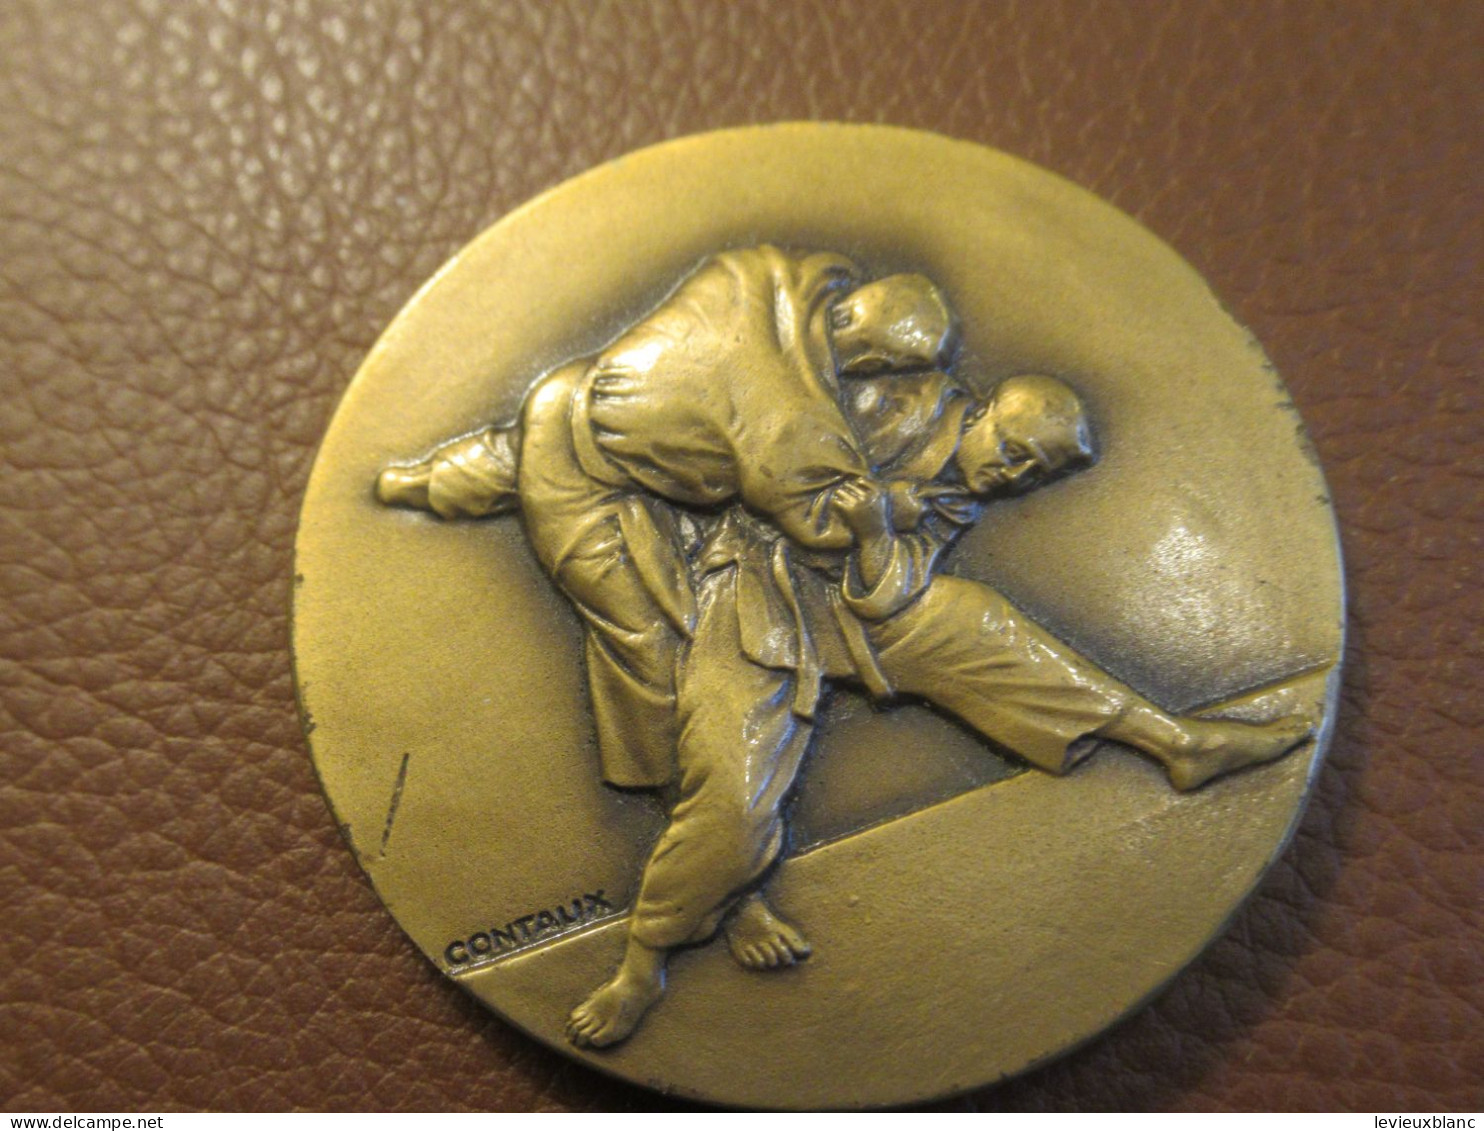 JUDO / Médaille De Compétition / Non Attribuée/ Bronze   /Vers 1950-1970   SPO462 - Kampfsport